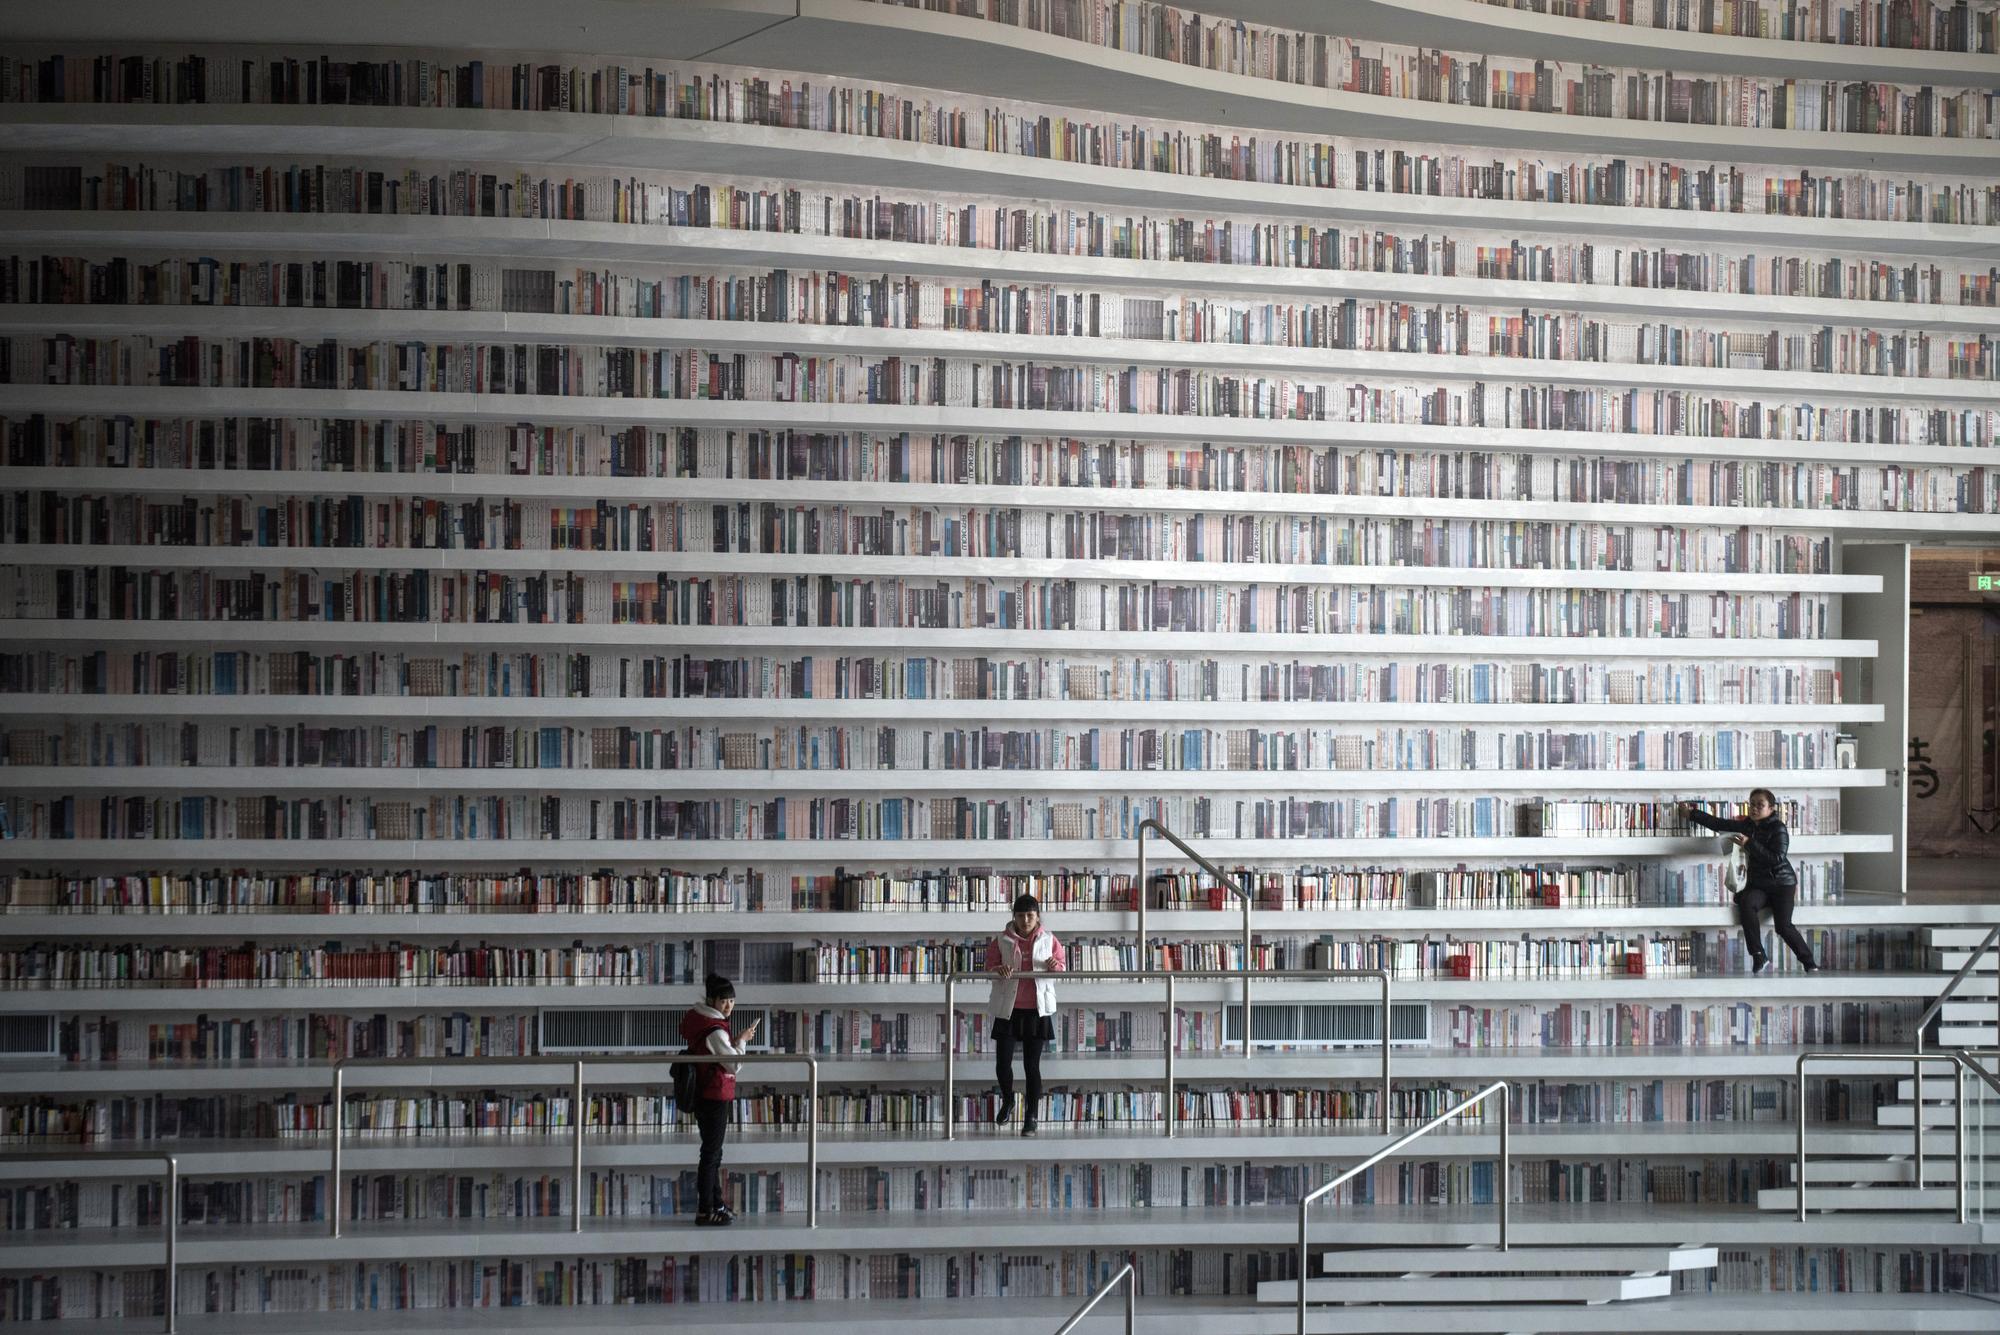 Tandis que certaines bibliothèques renoncent totalement au livre, la nouvelle bibliothèque de la ville chinoise de Tianjin en rassemble 1,2 million. [AFP - FRED DUFOUR]